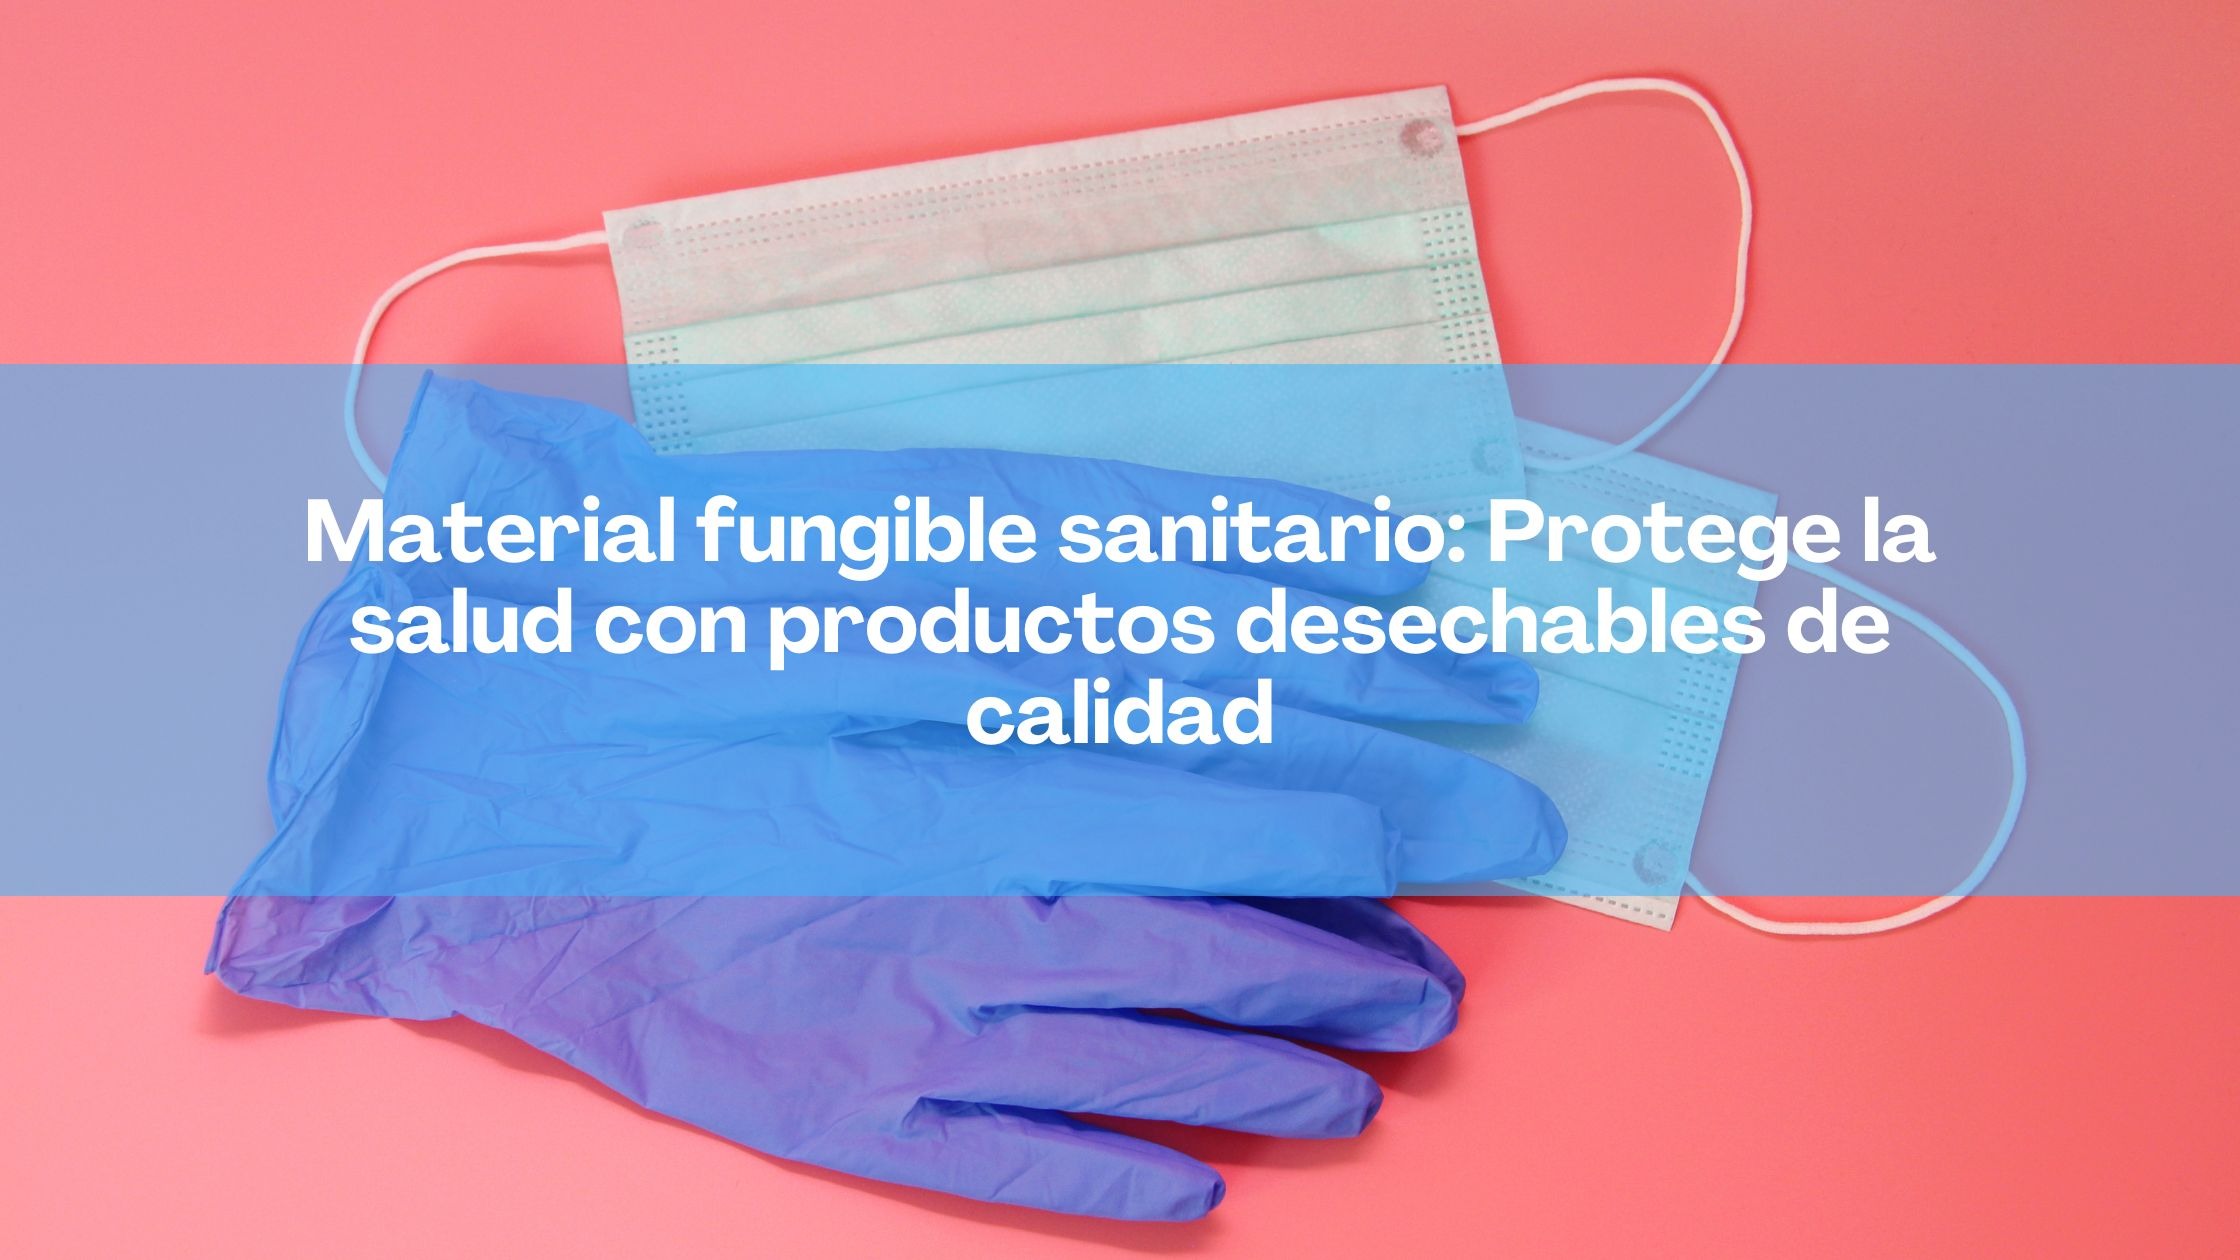 Material fungible sanitario: Protege la salud con productos desechables de calidad